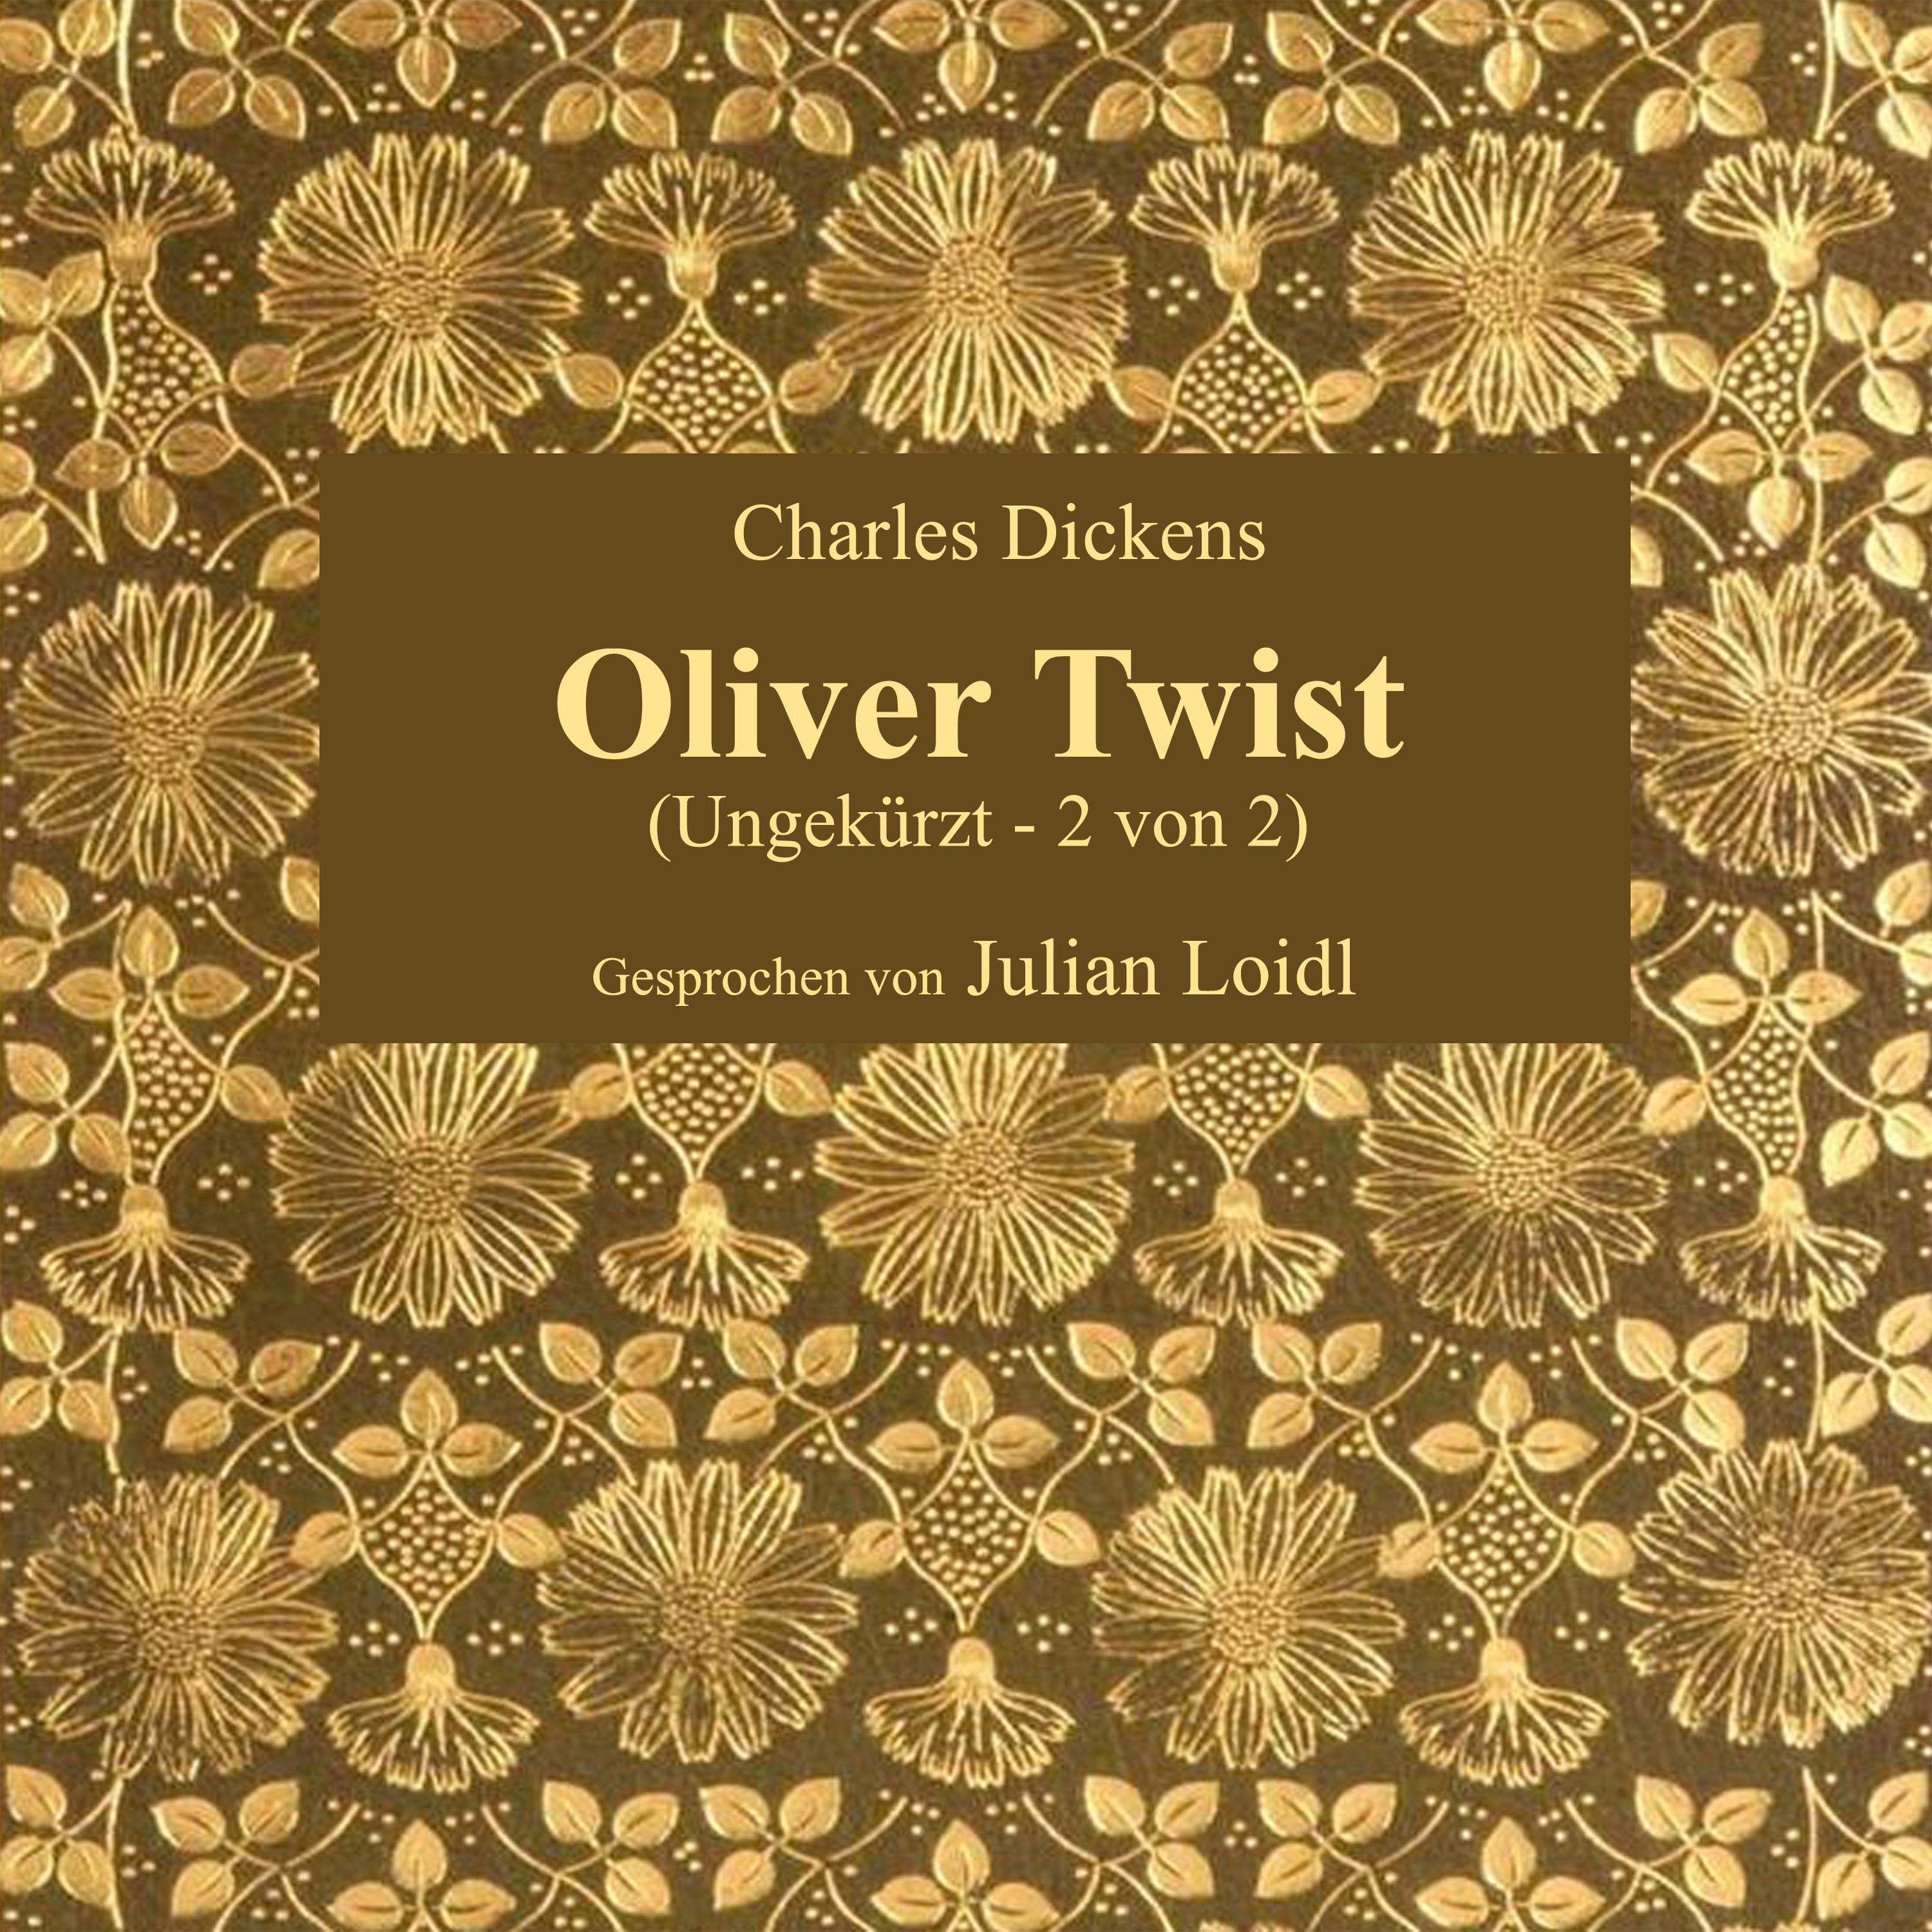 Kapitel 53: Oliver Twist (Teil 3)